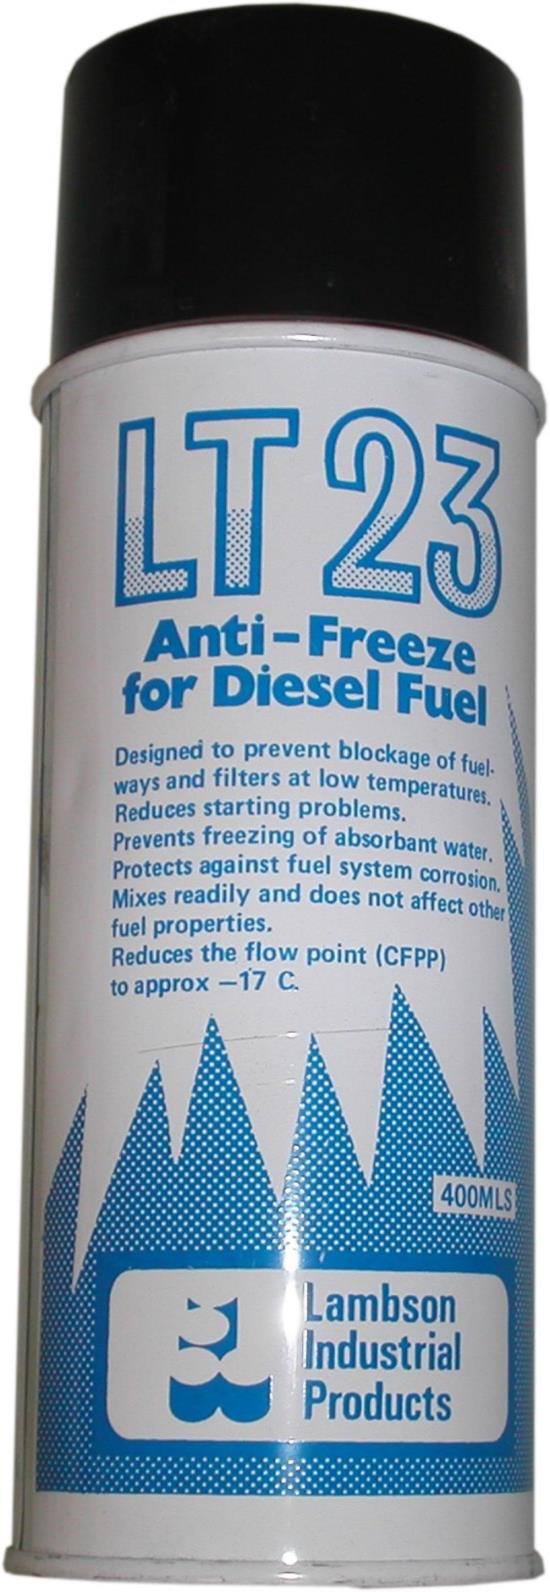 Picture of Diesel Fuel Antifreeze LT23